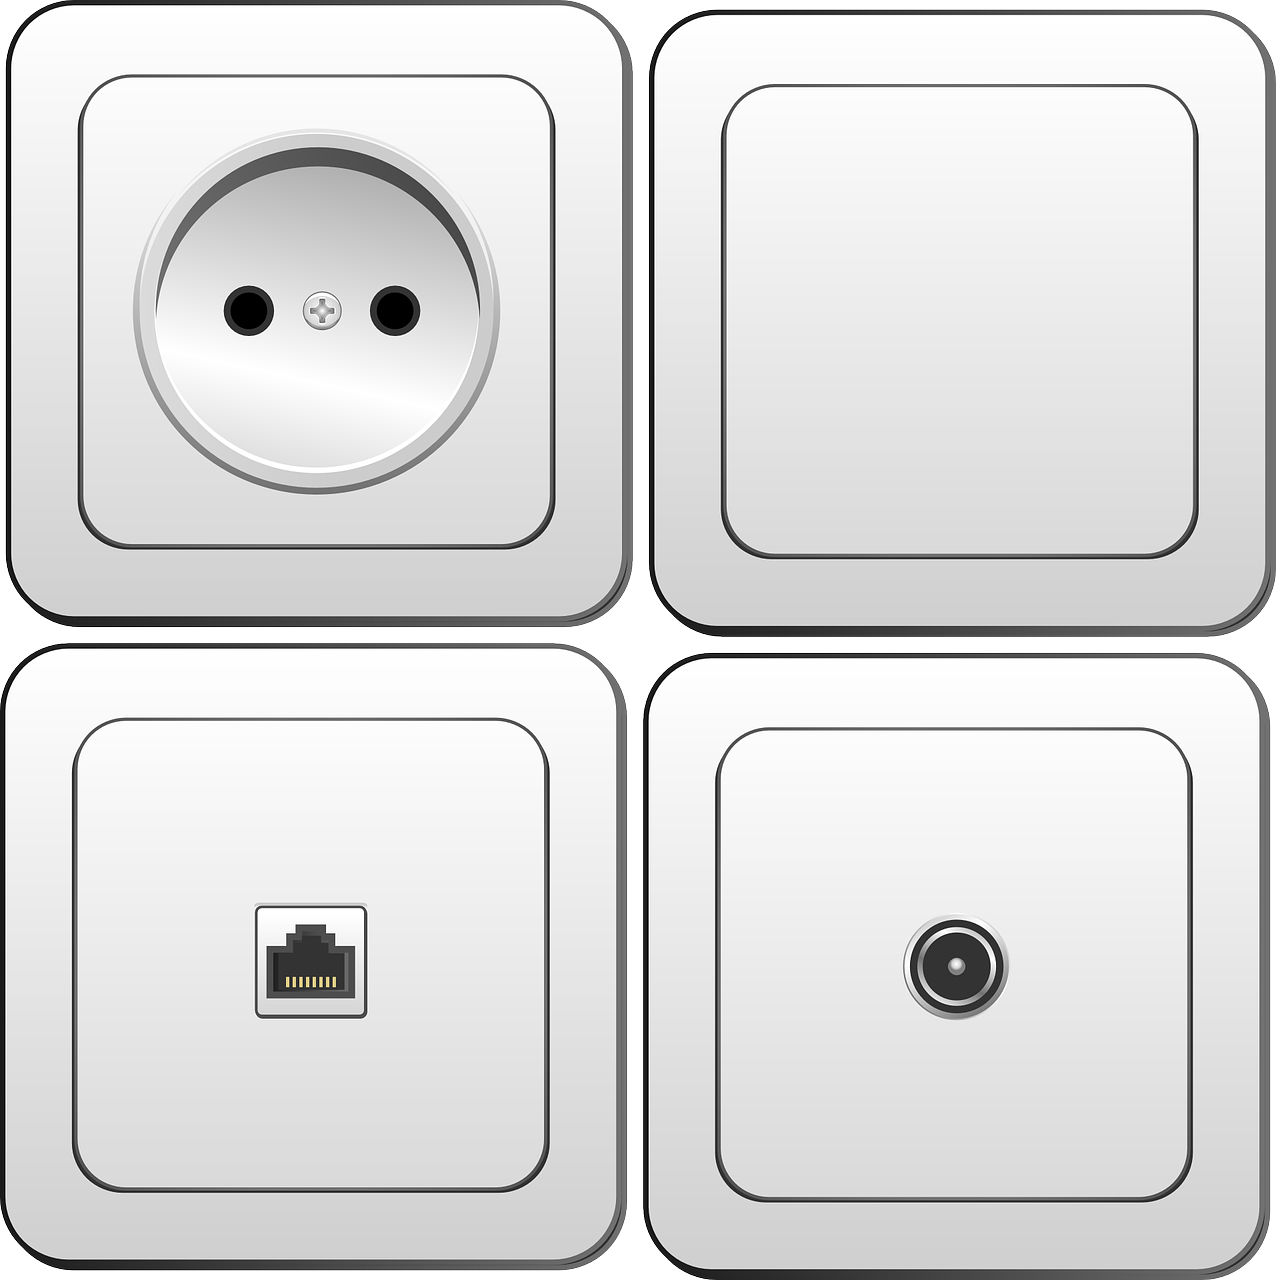 electronics switch plug socket free photo